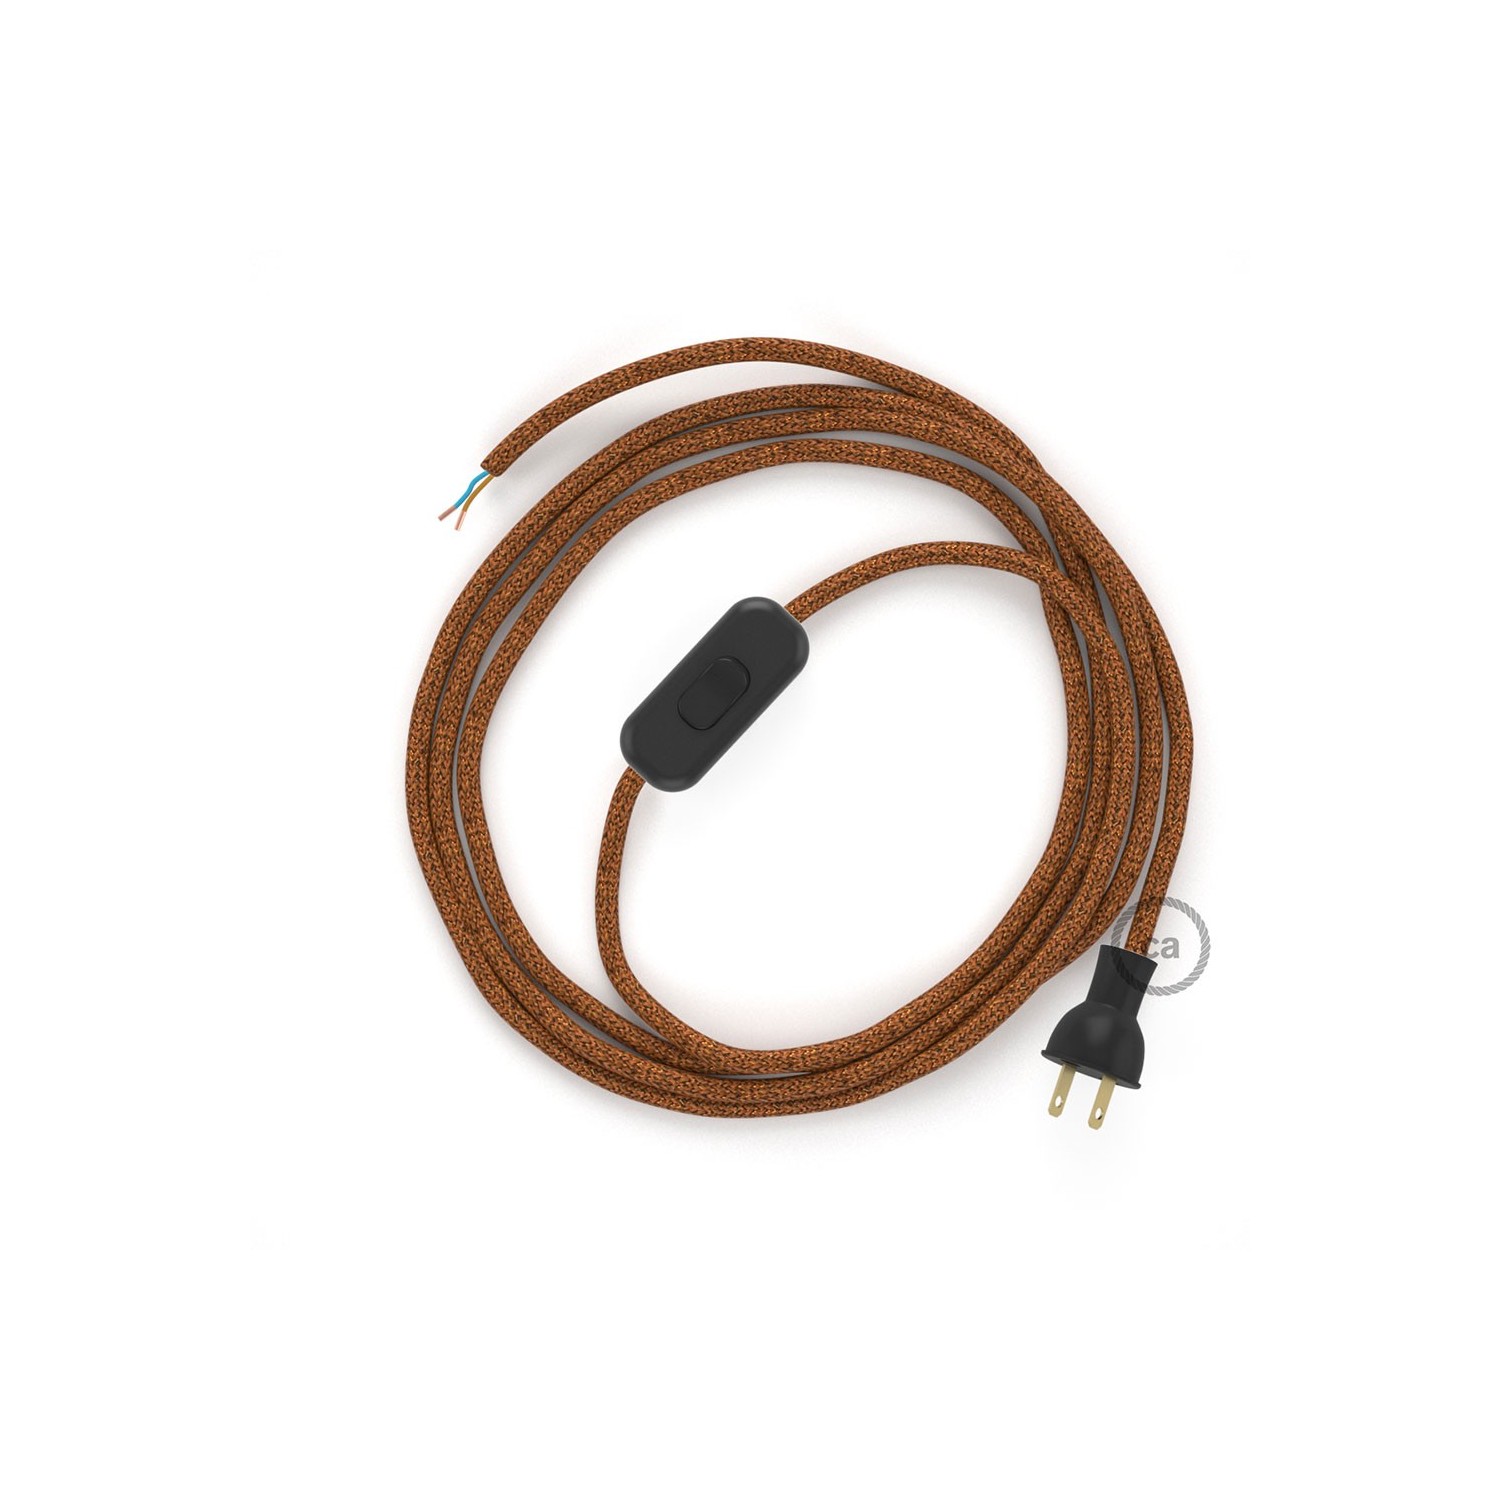 Cableado para lámpara de mesa, cable RL22 Rayón Brillante Cobre 1,8 m. Elige el color de la clavija y del interruptor!